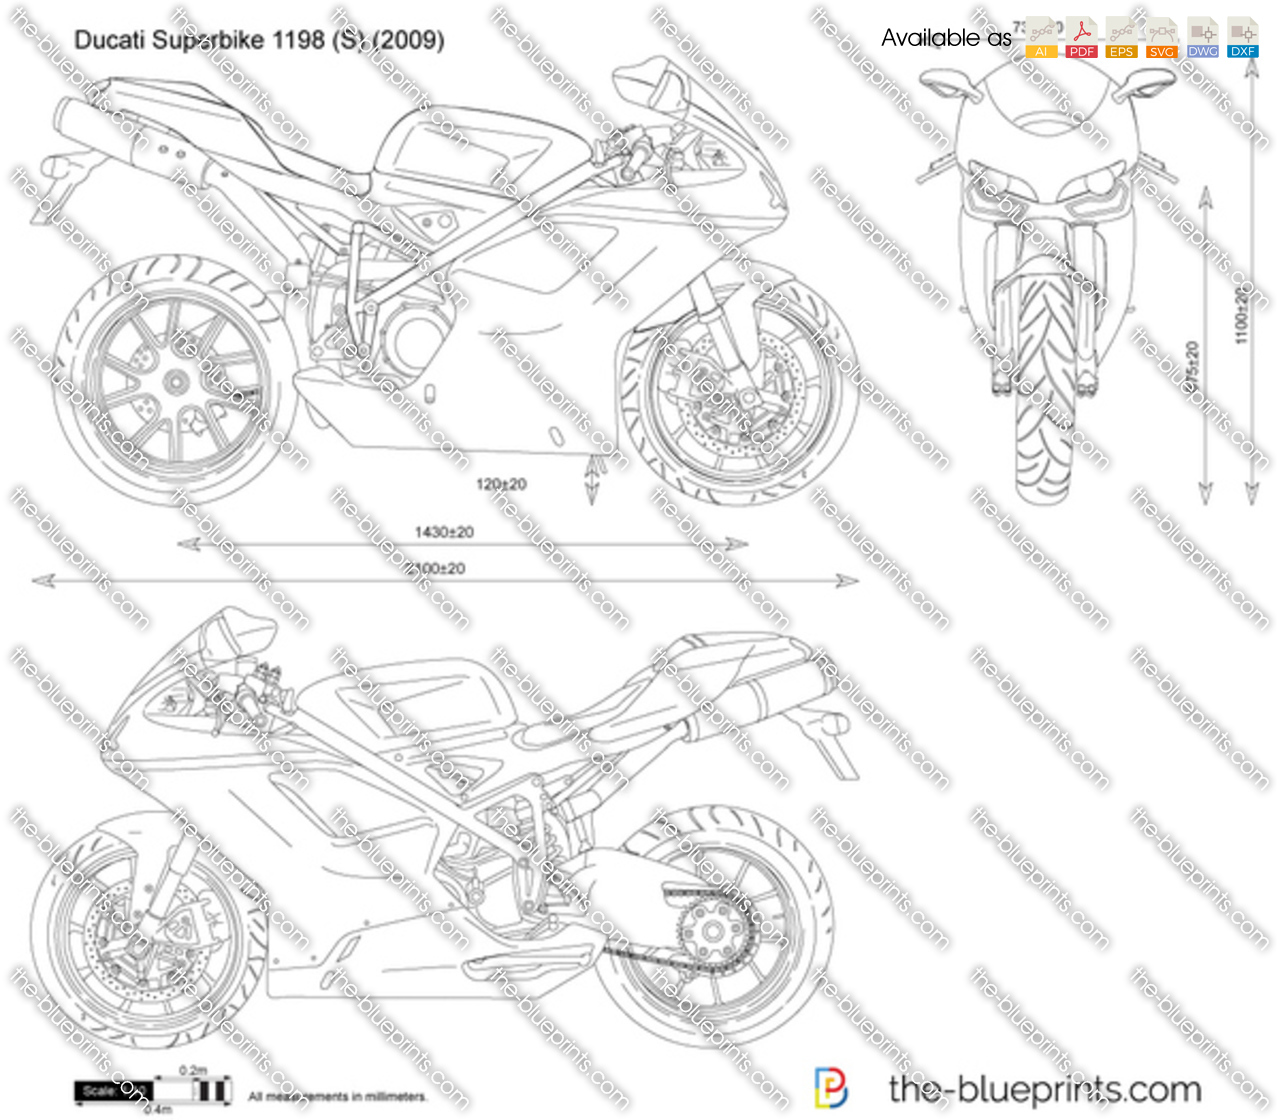 Ducati Superbike 1198 (S)